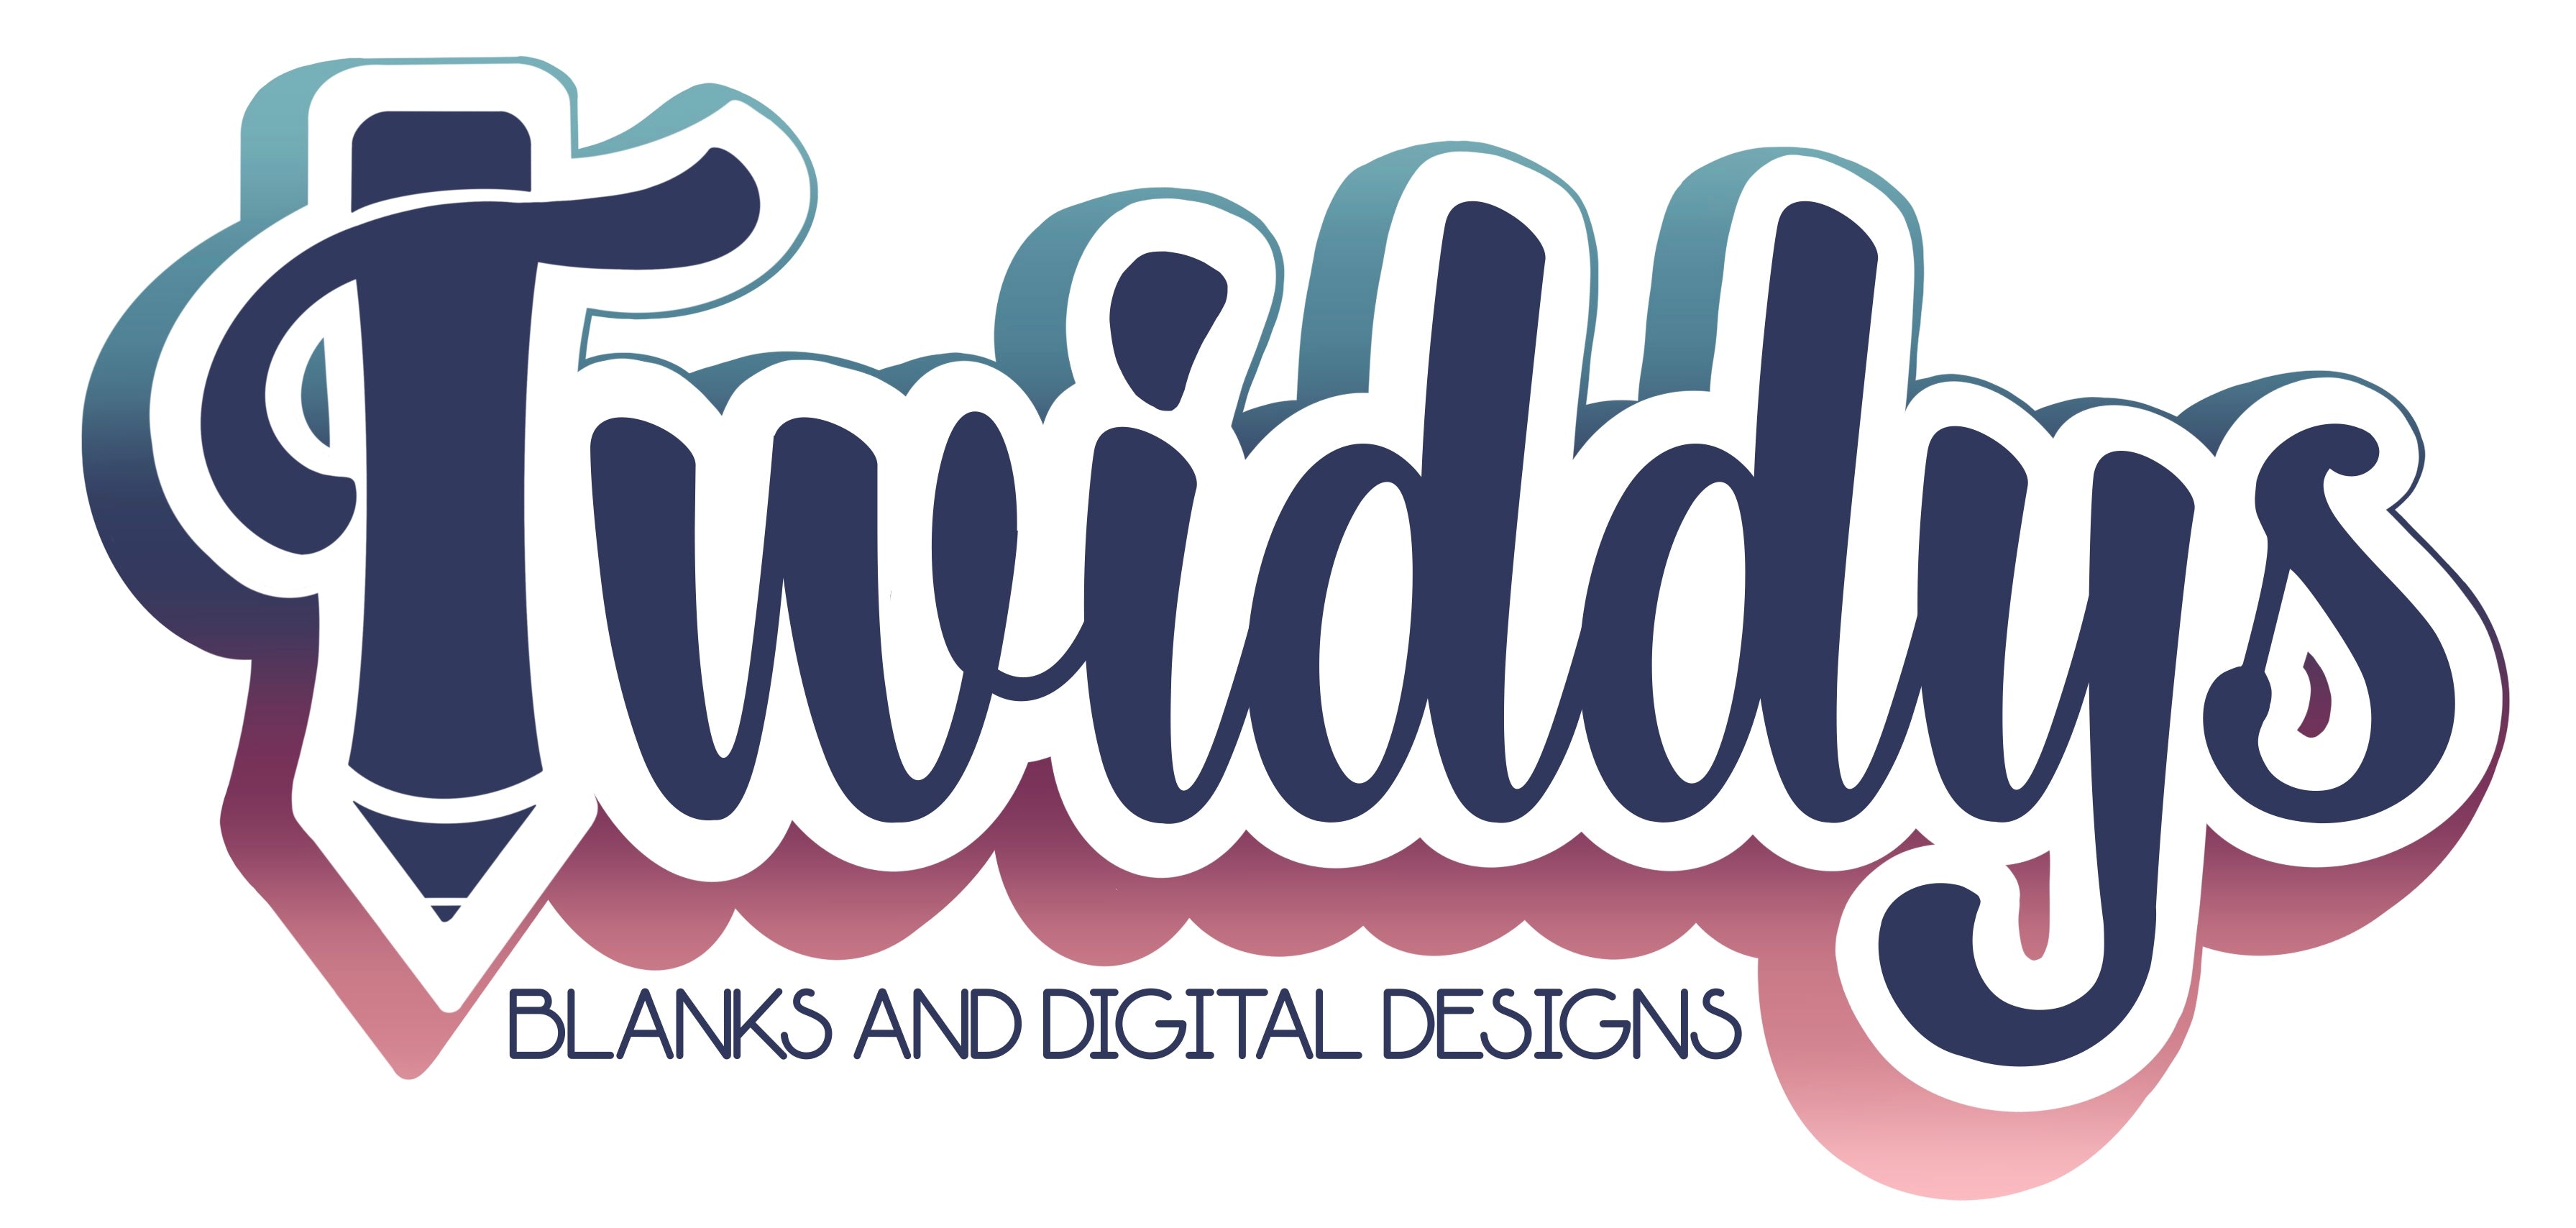 Twiddys Blanks and Digital Designs